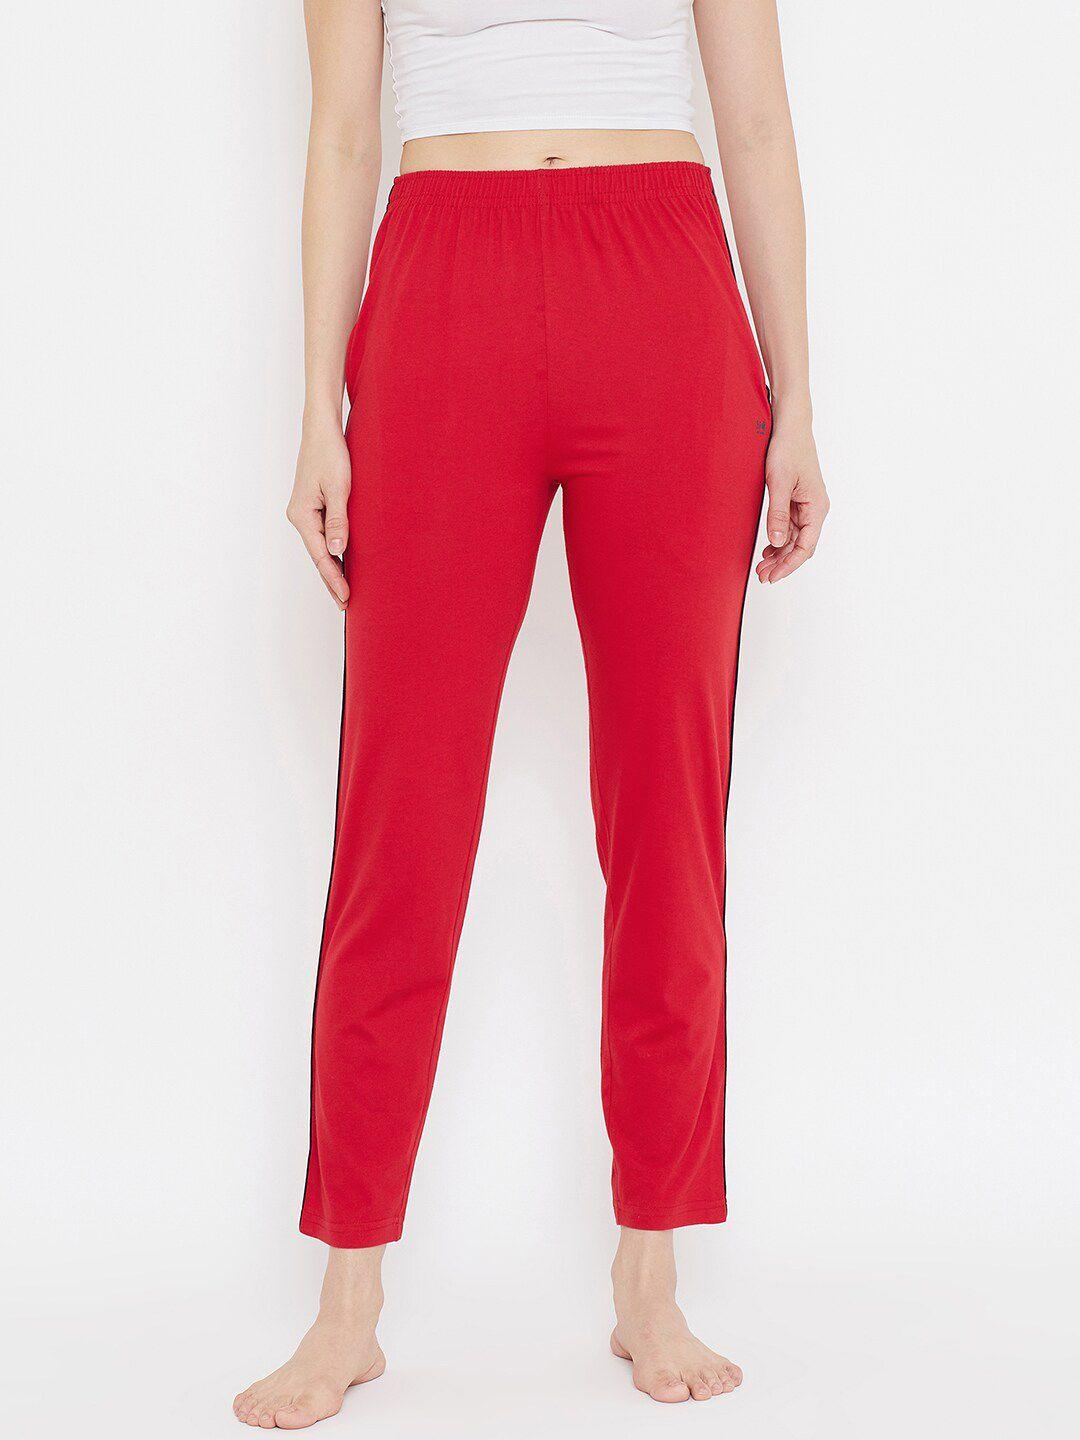 okane-women-red-solid-lounge-pants